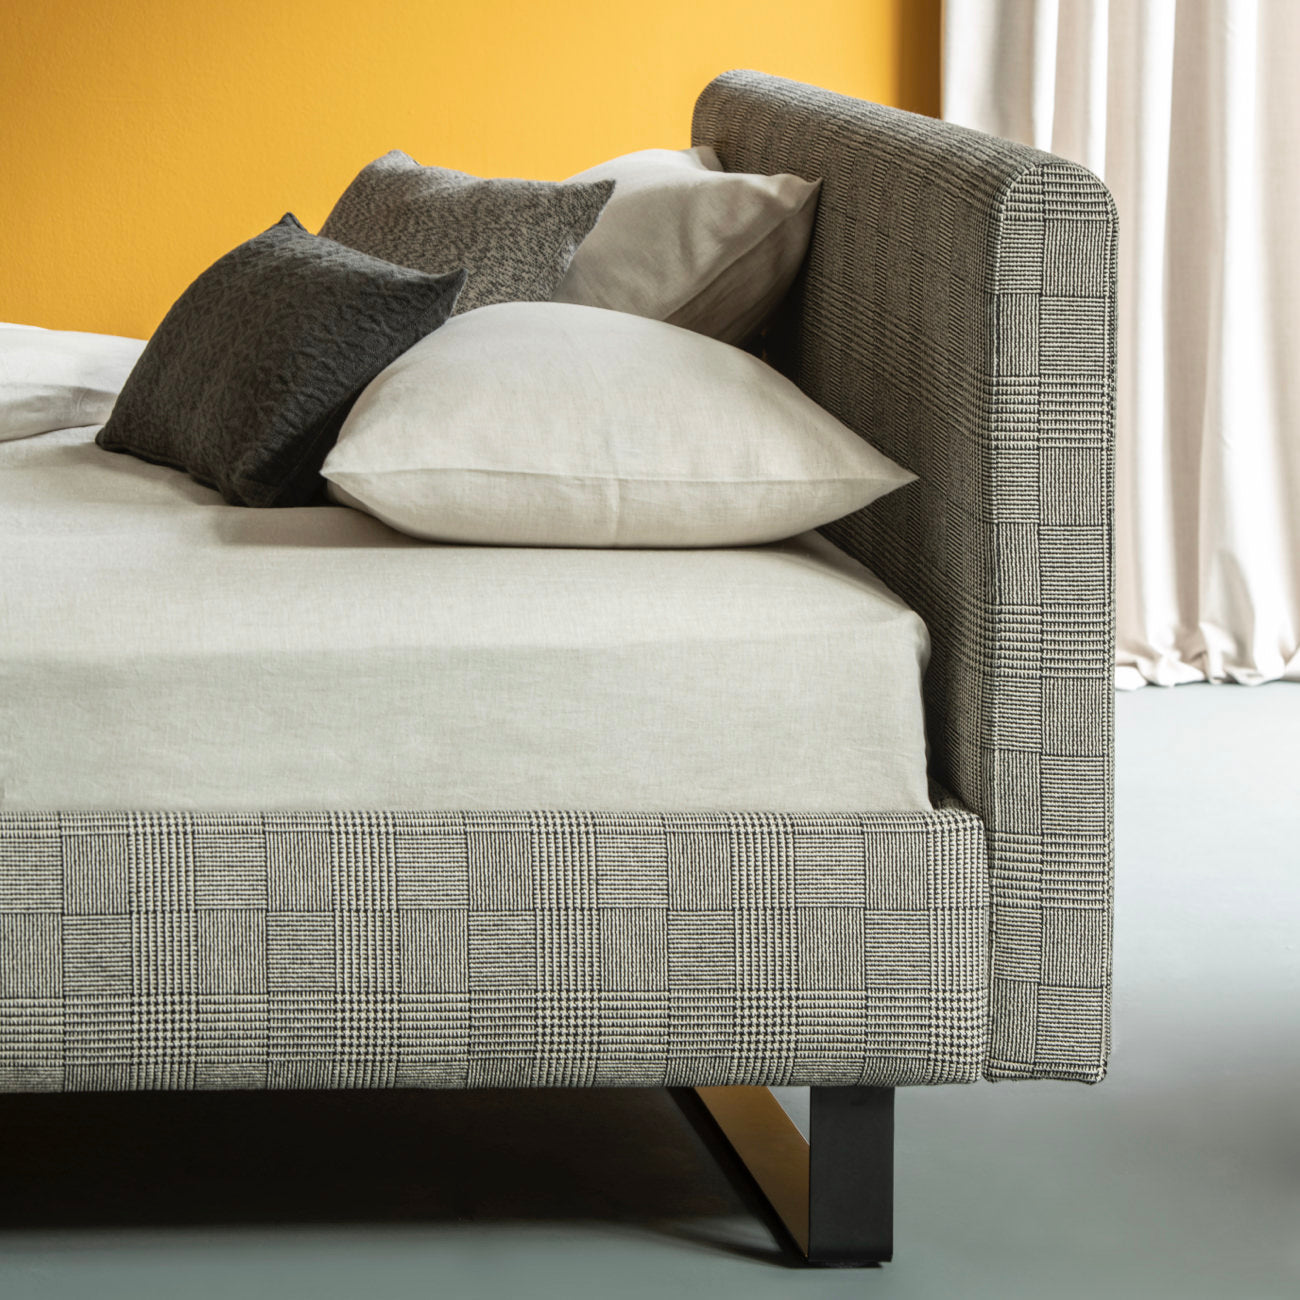 PLAISIR bed by Christine Kröncke Interior Design